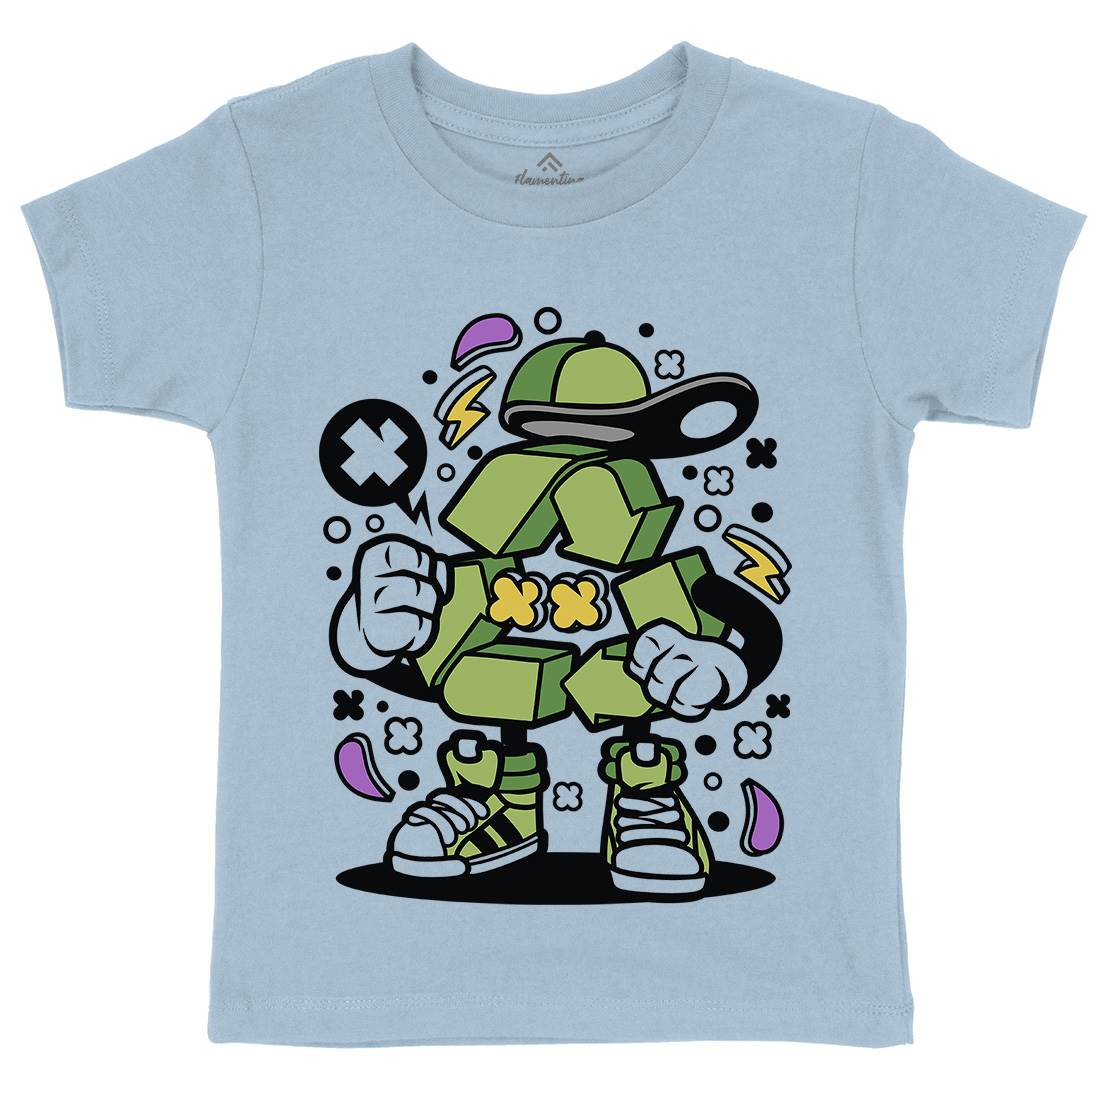 Recycle Kids Crew Neck T-Shirt Retro C628